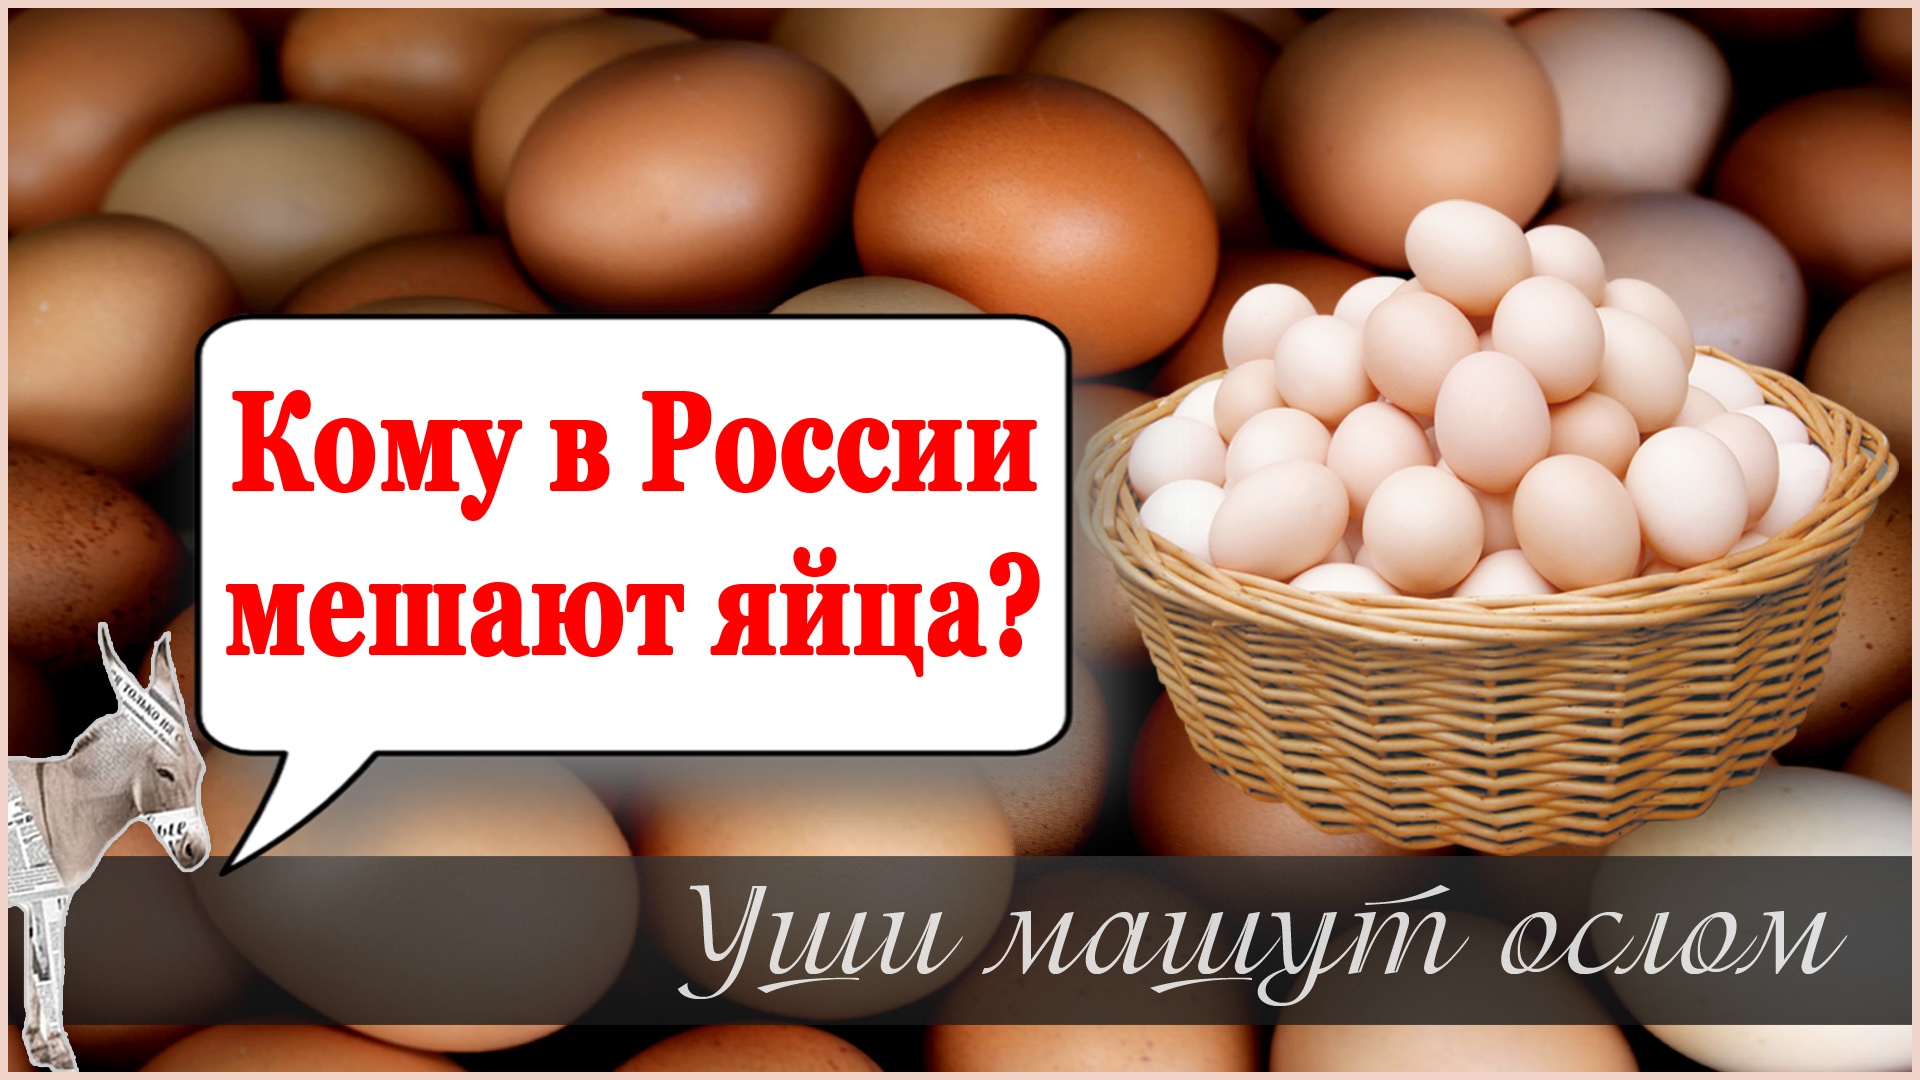 Кому в России мешают яйца?